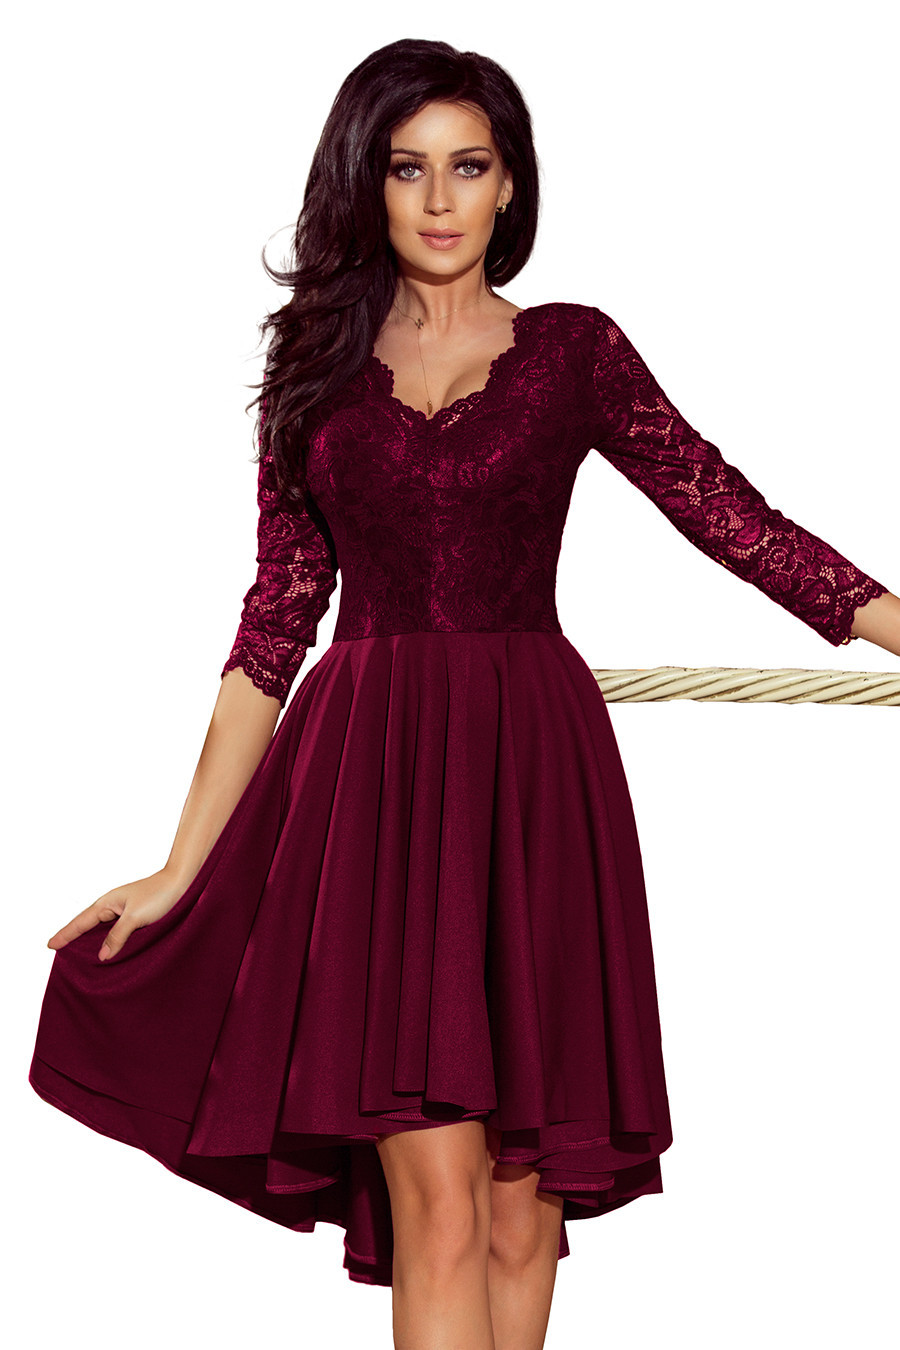 NICOLLE - Dámské šaty ve švestkové barvě s delším zadním dílem a krajkovým výstřihem 210-13 XXL